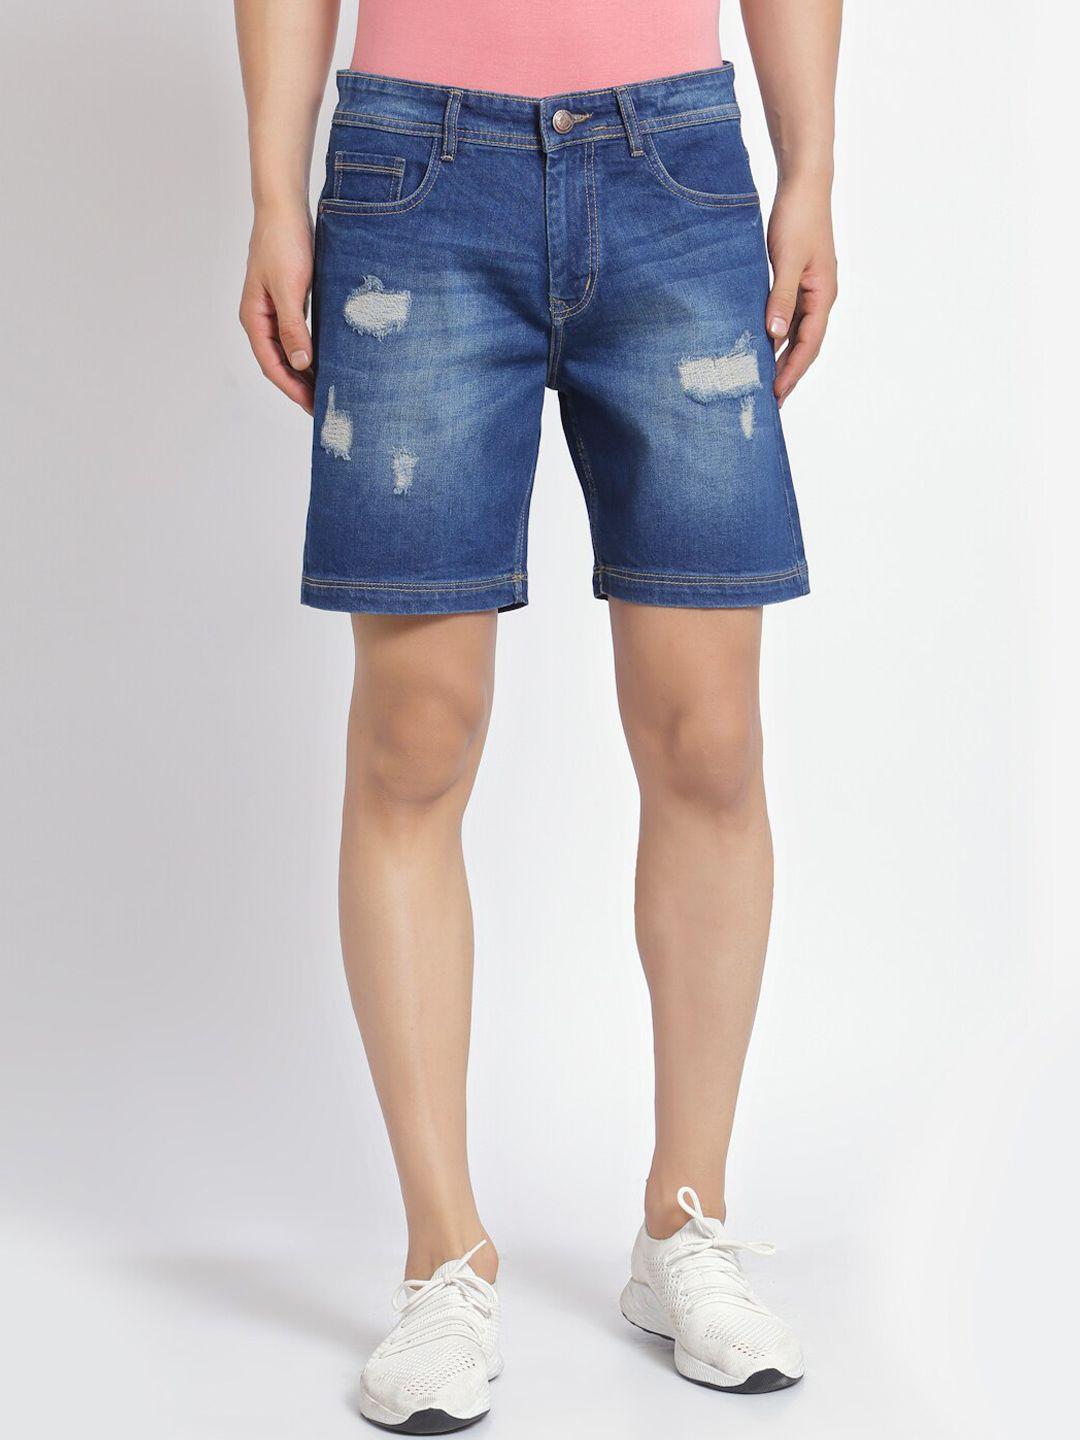 fever men blue washed printed slim fit denim shorts